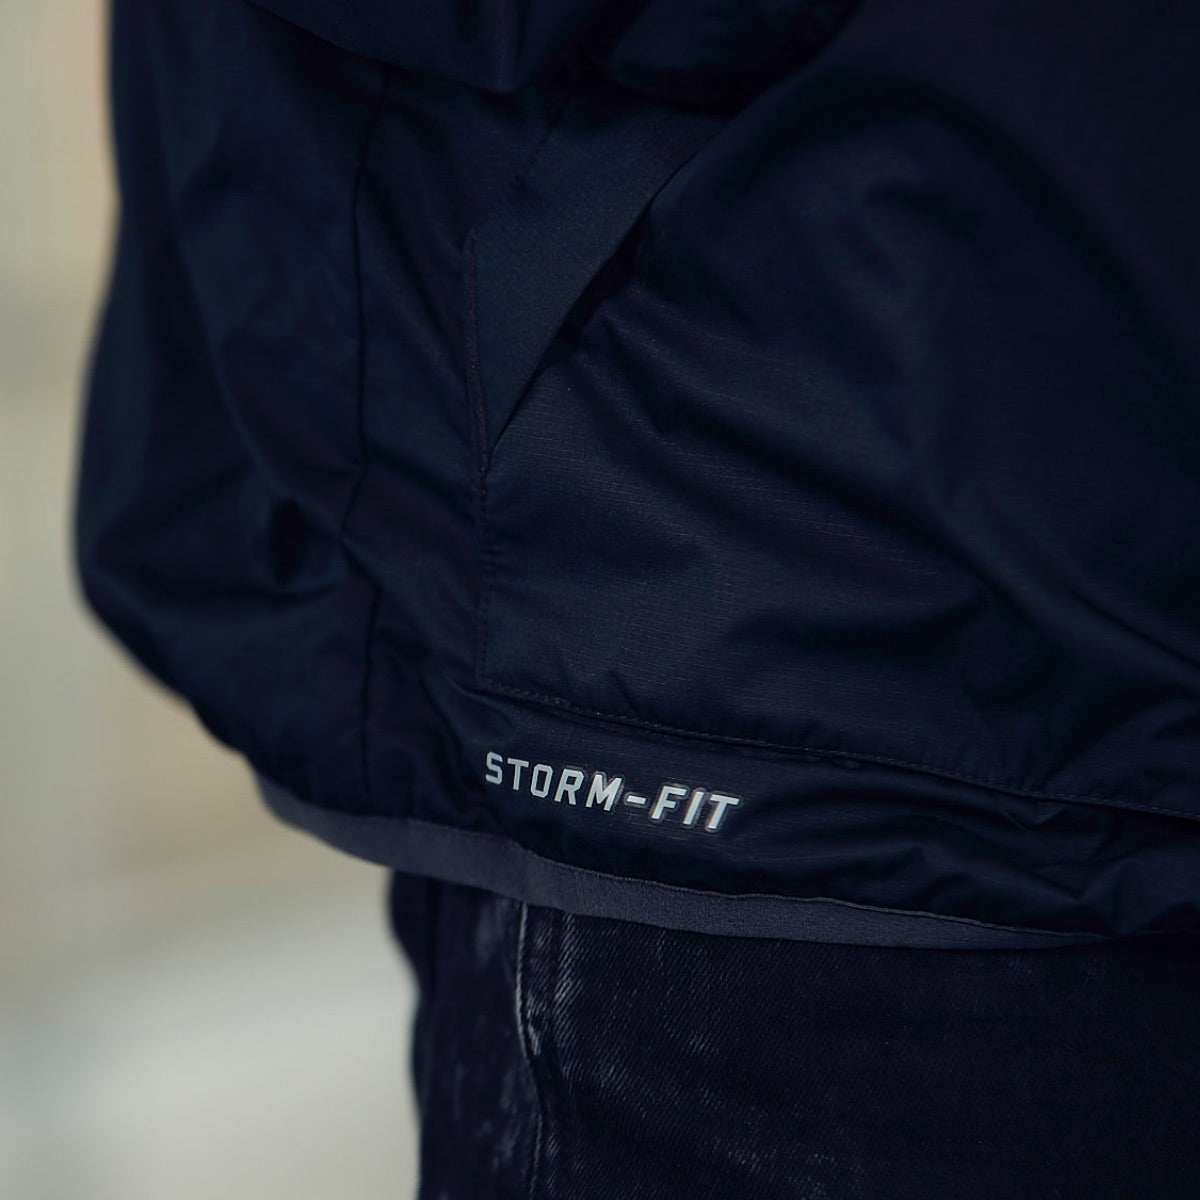 Apollo x Nike Storm Fit Jacket